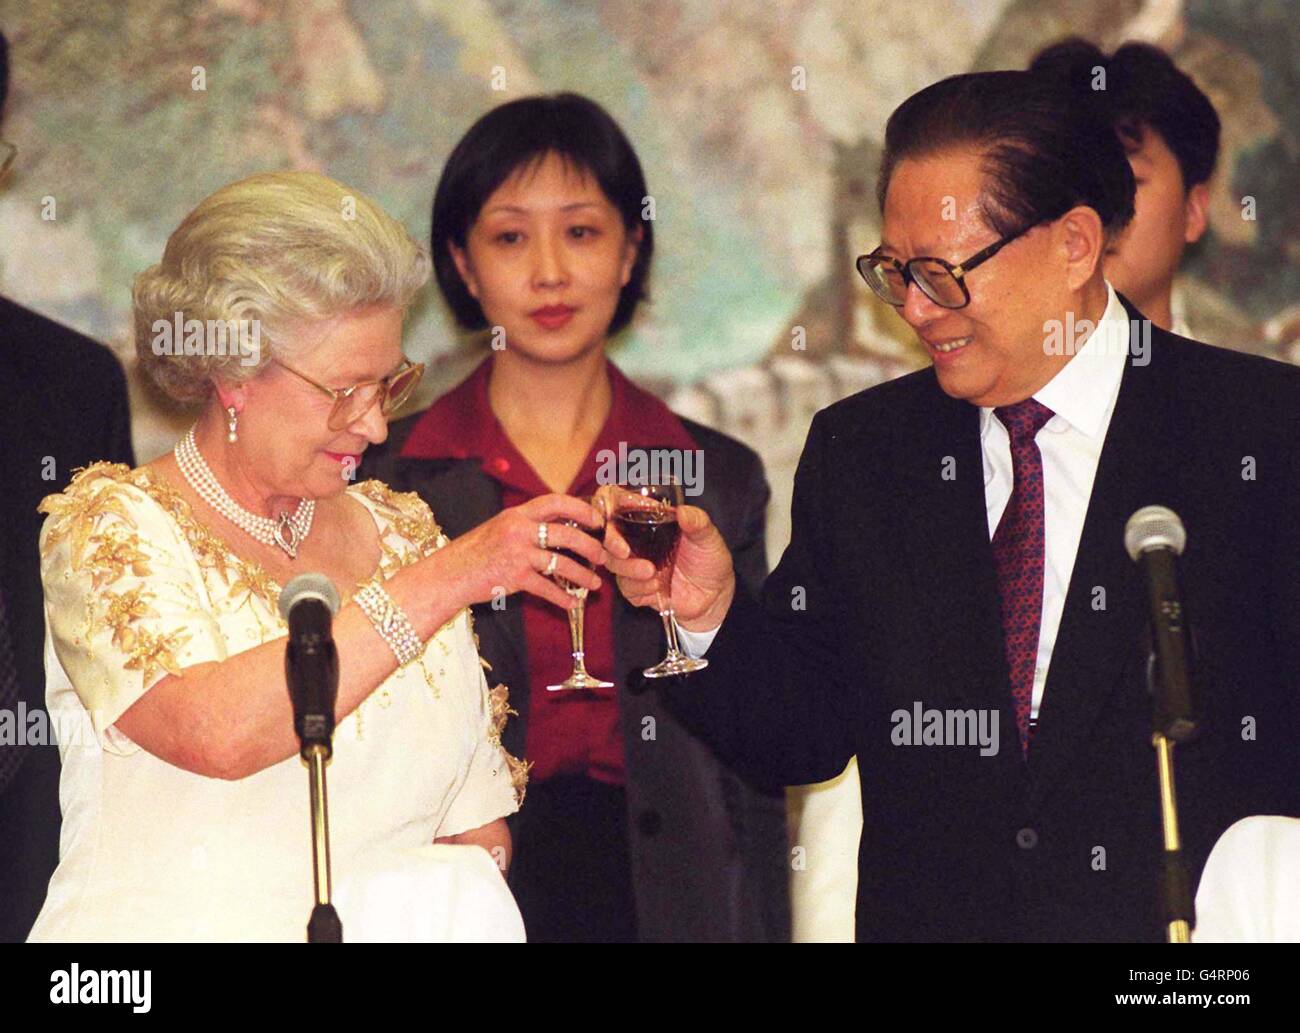 Lors d'un banquet tenu à l'ambassade chinoise de Londres, la Reine Elizabeth II partage un toast avec le président chinois Jiang Zemin. Banque D'Images